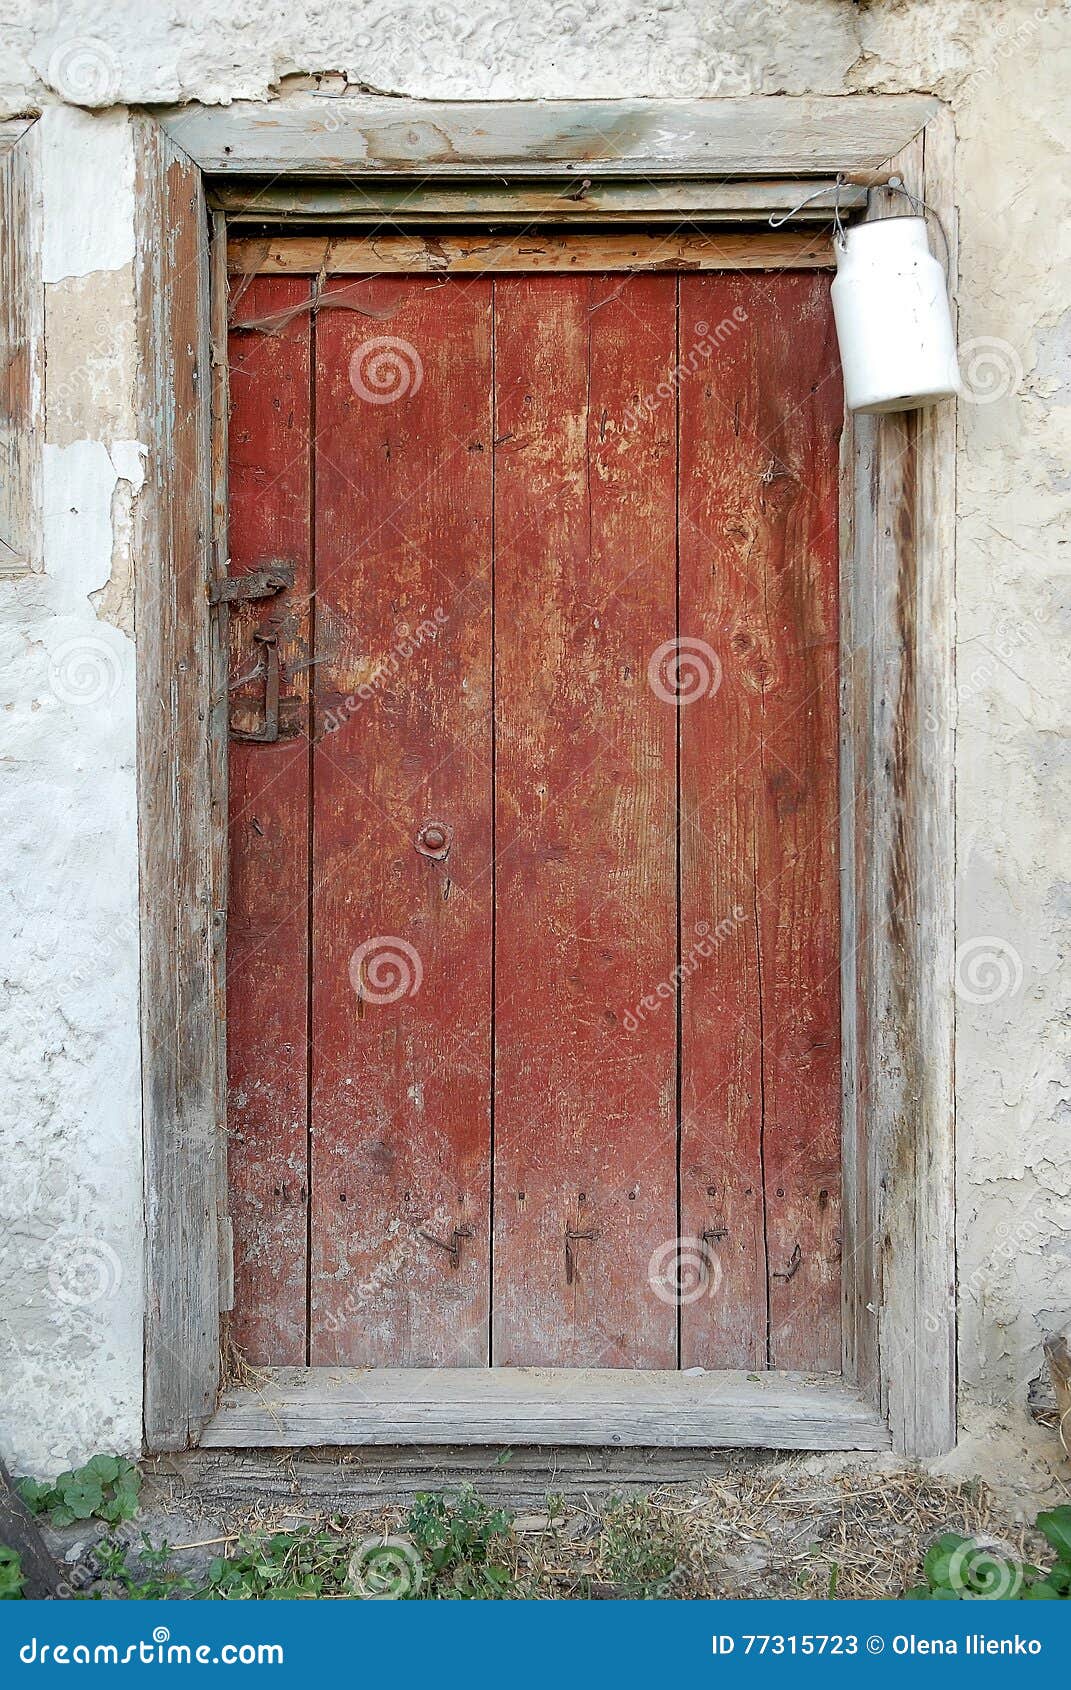 Wooden Rustic Barn Door Detail. Stock Image ...